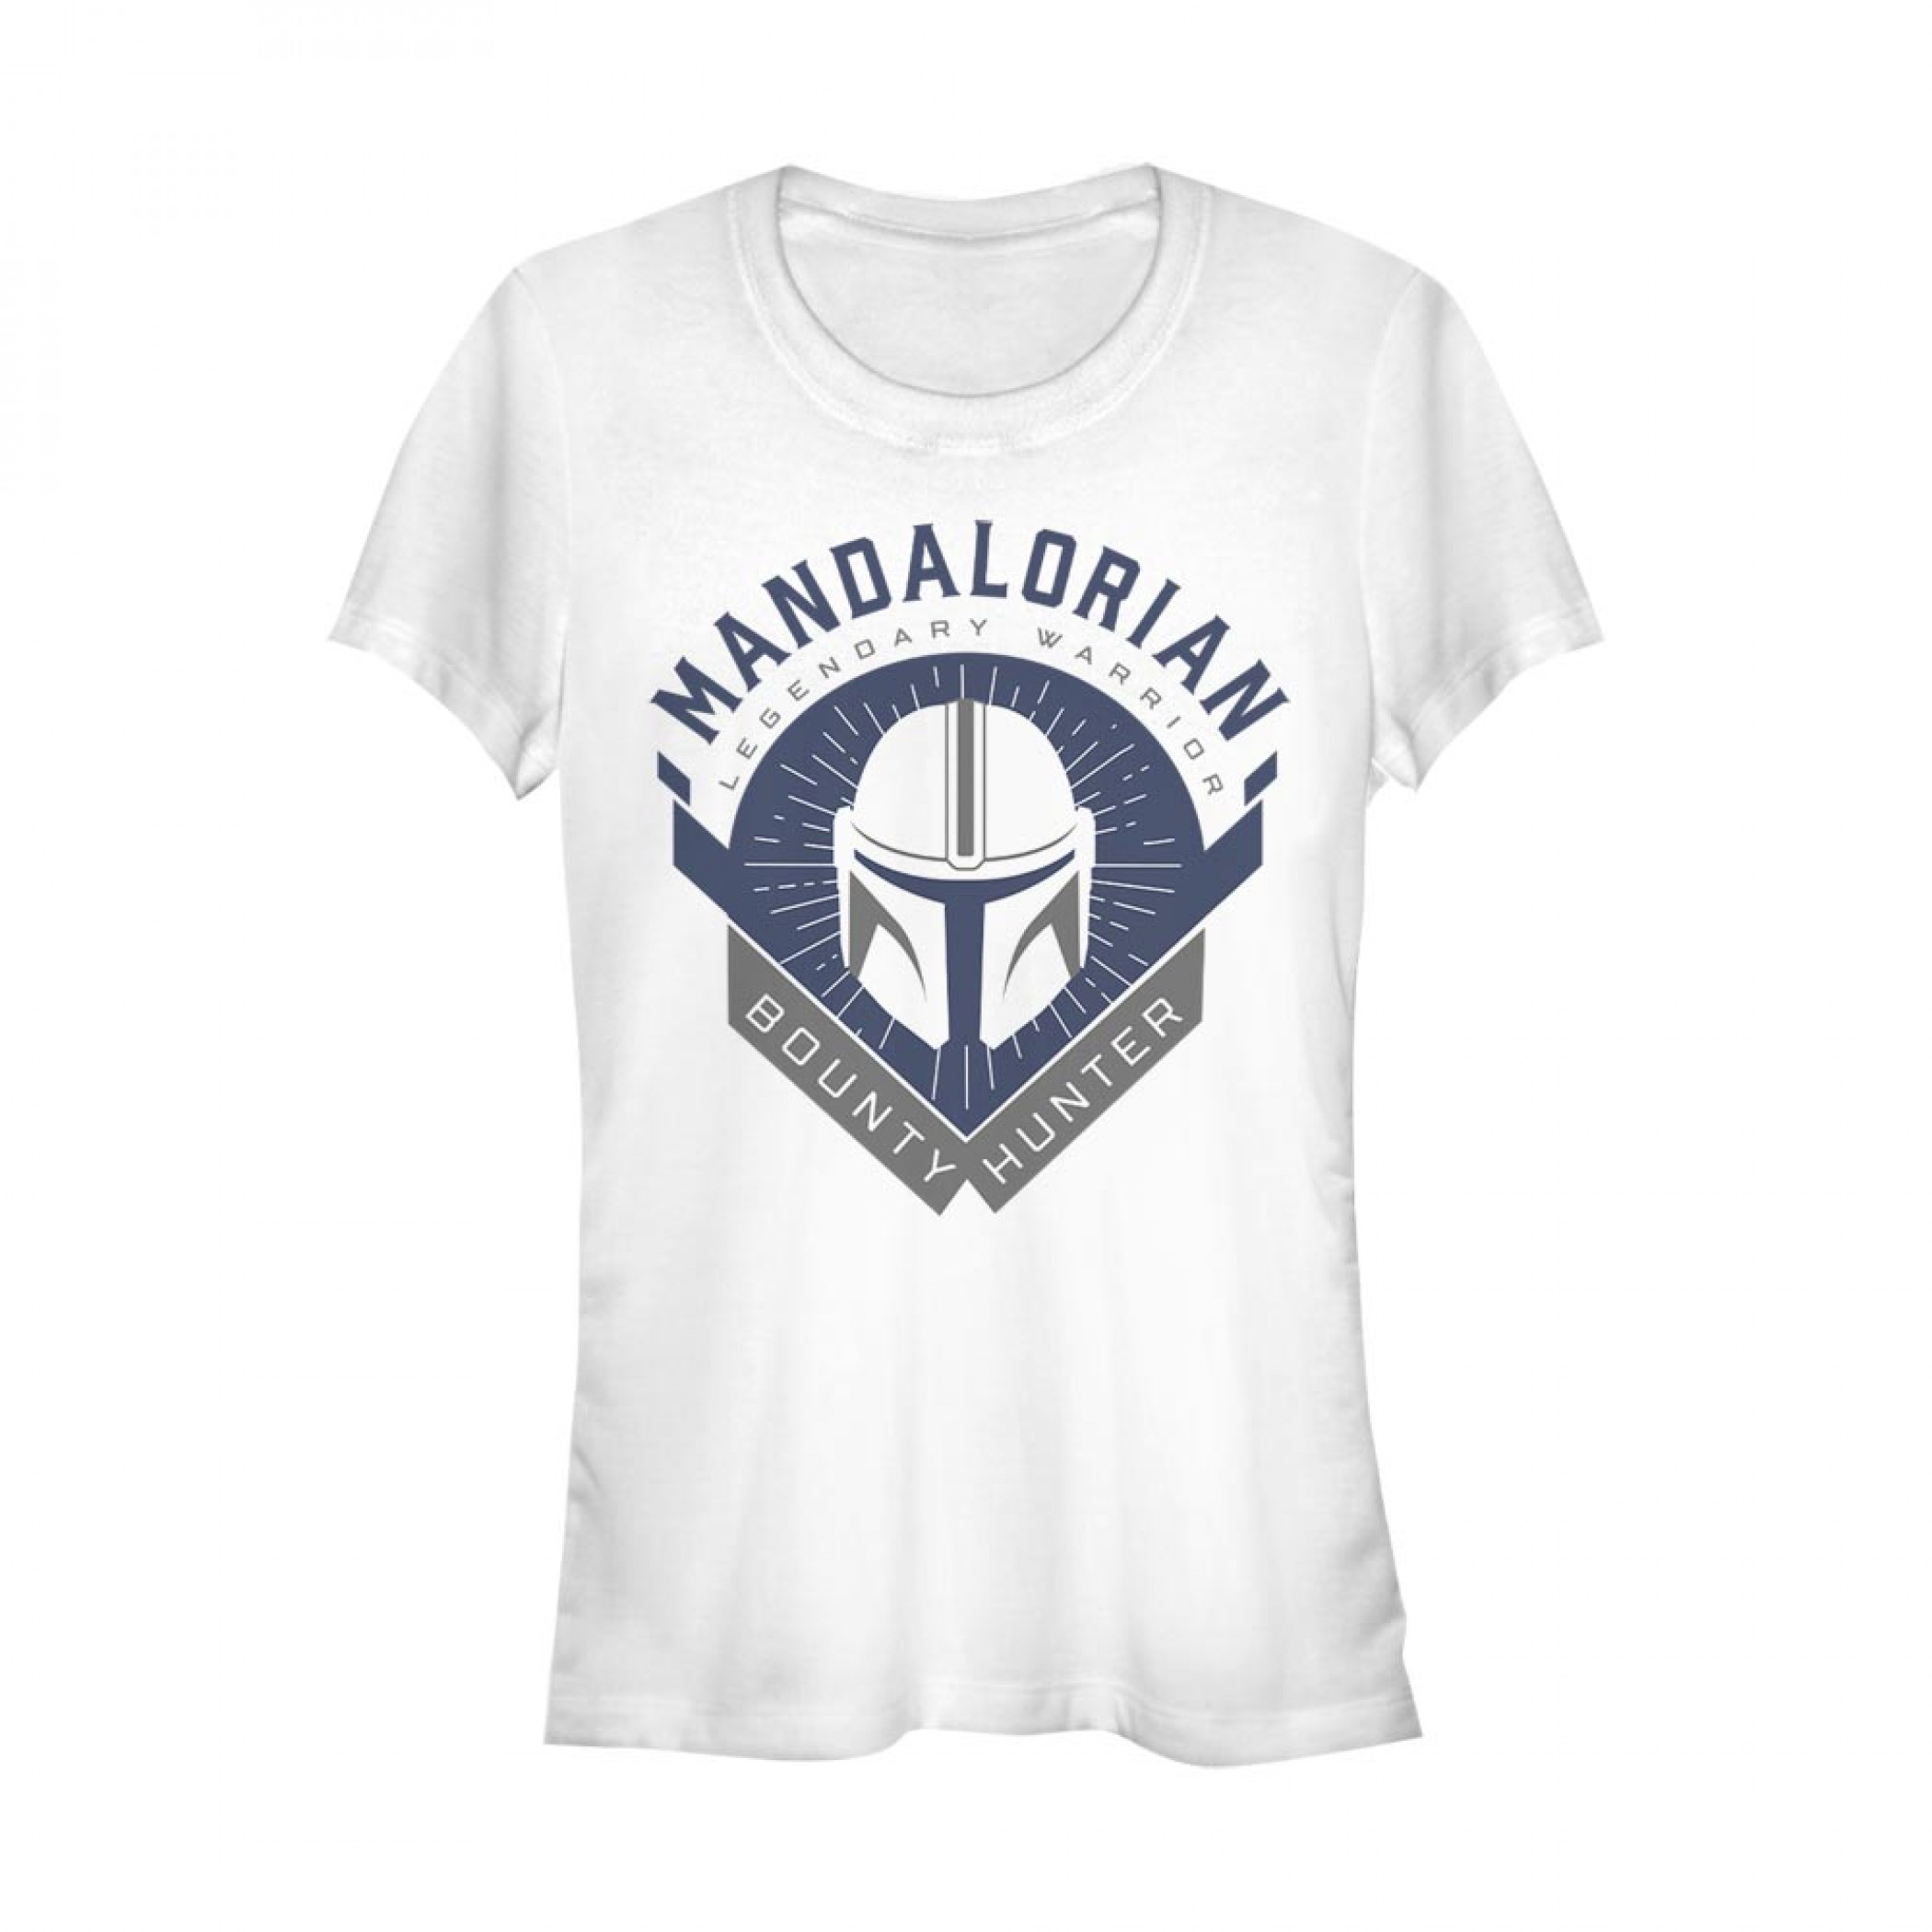 The Mandalorian Legendary Warrior Emblem Women's T-Shirt